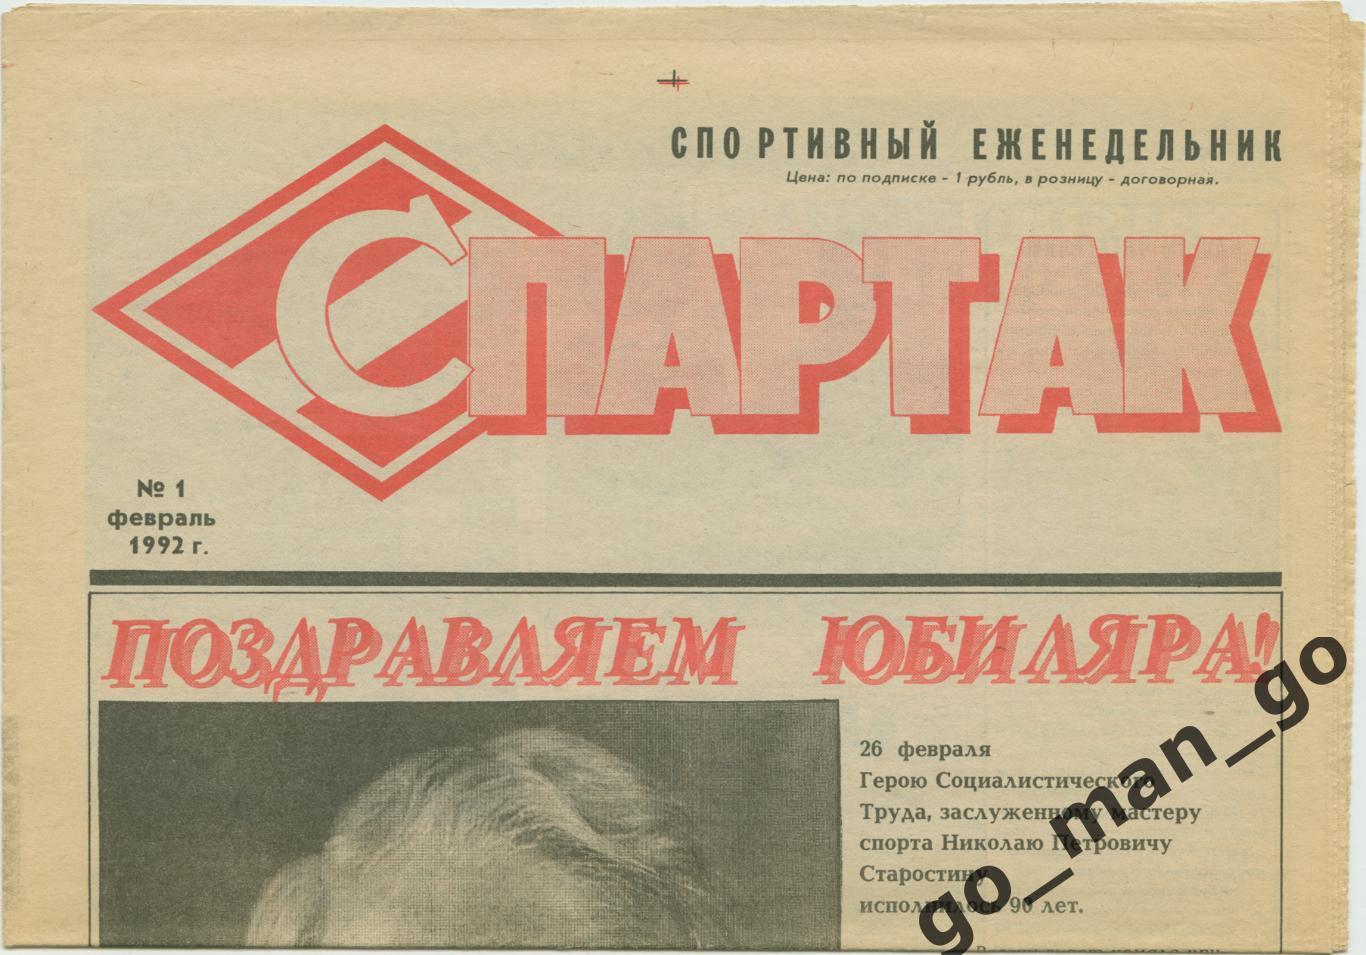 Еженедельник Спартак, 1992, № 1. Первый номер издания.